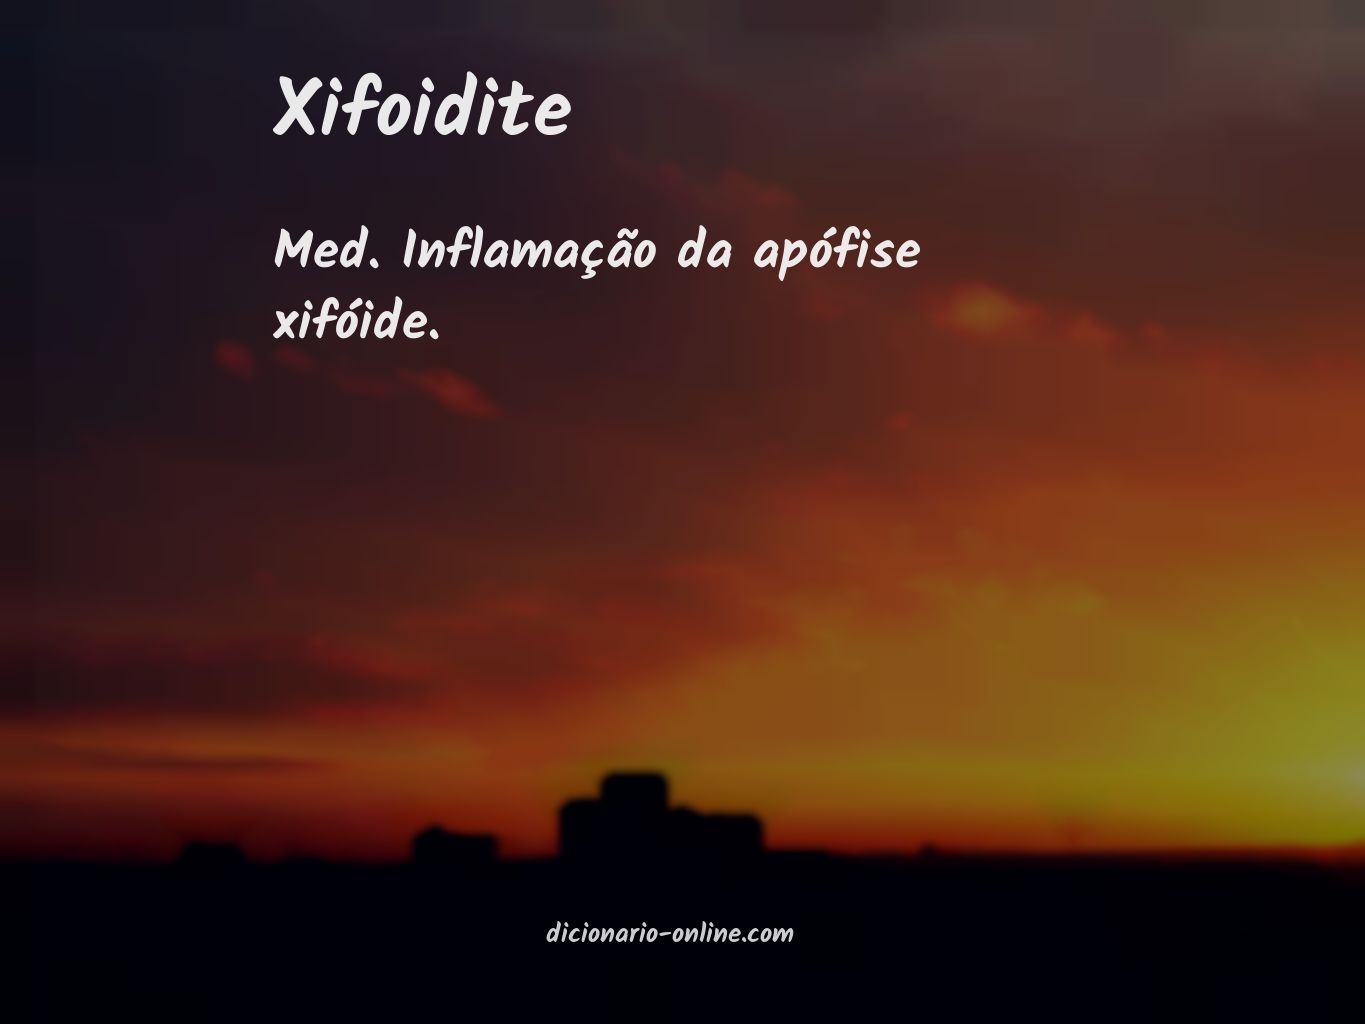 Significado de xifoidite